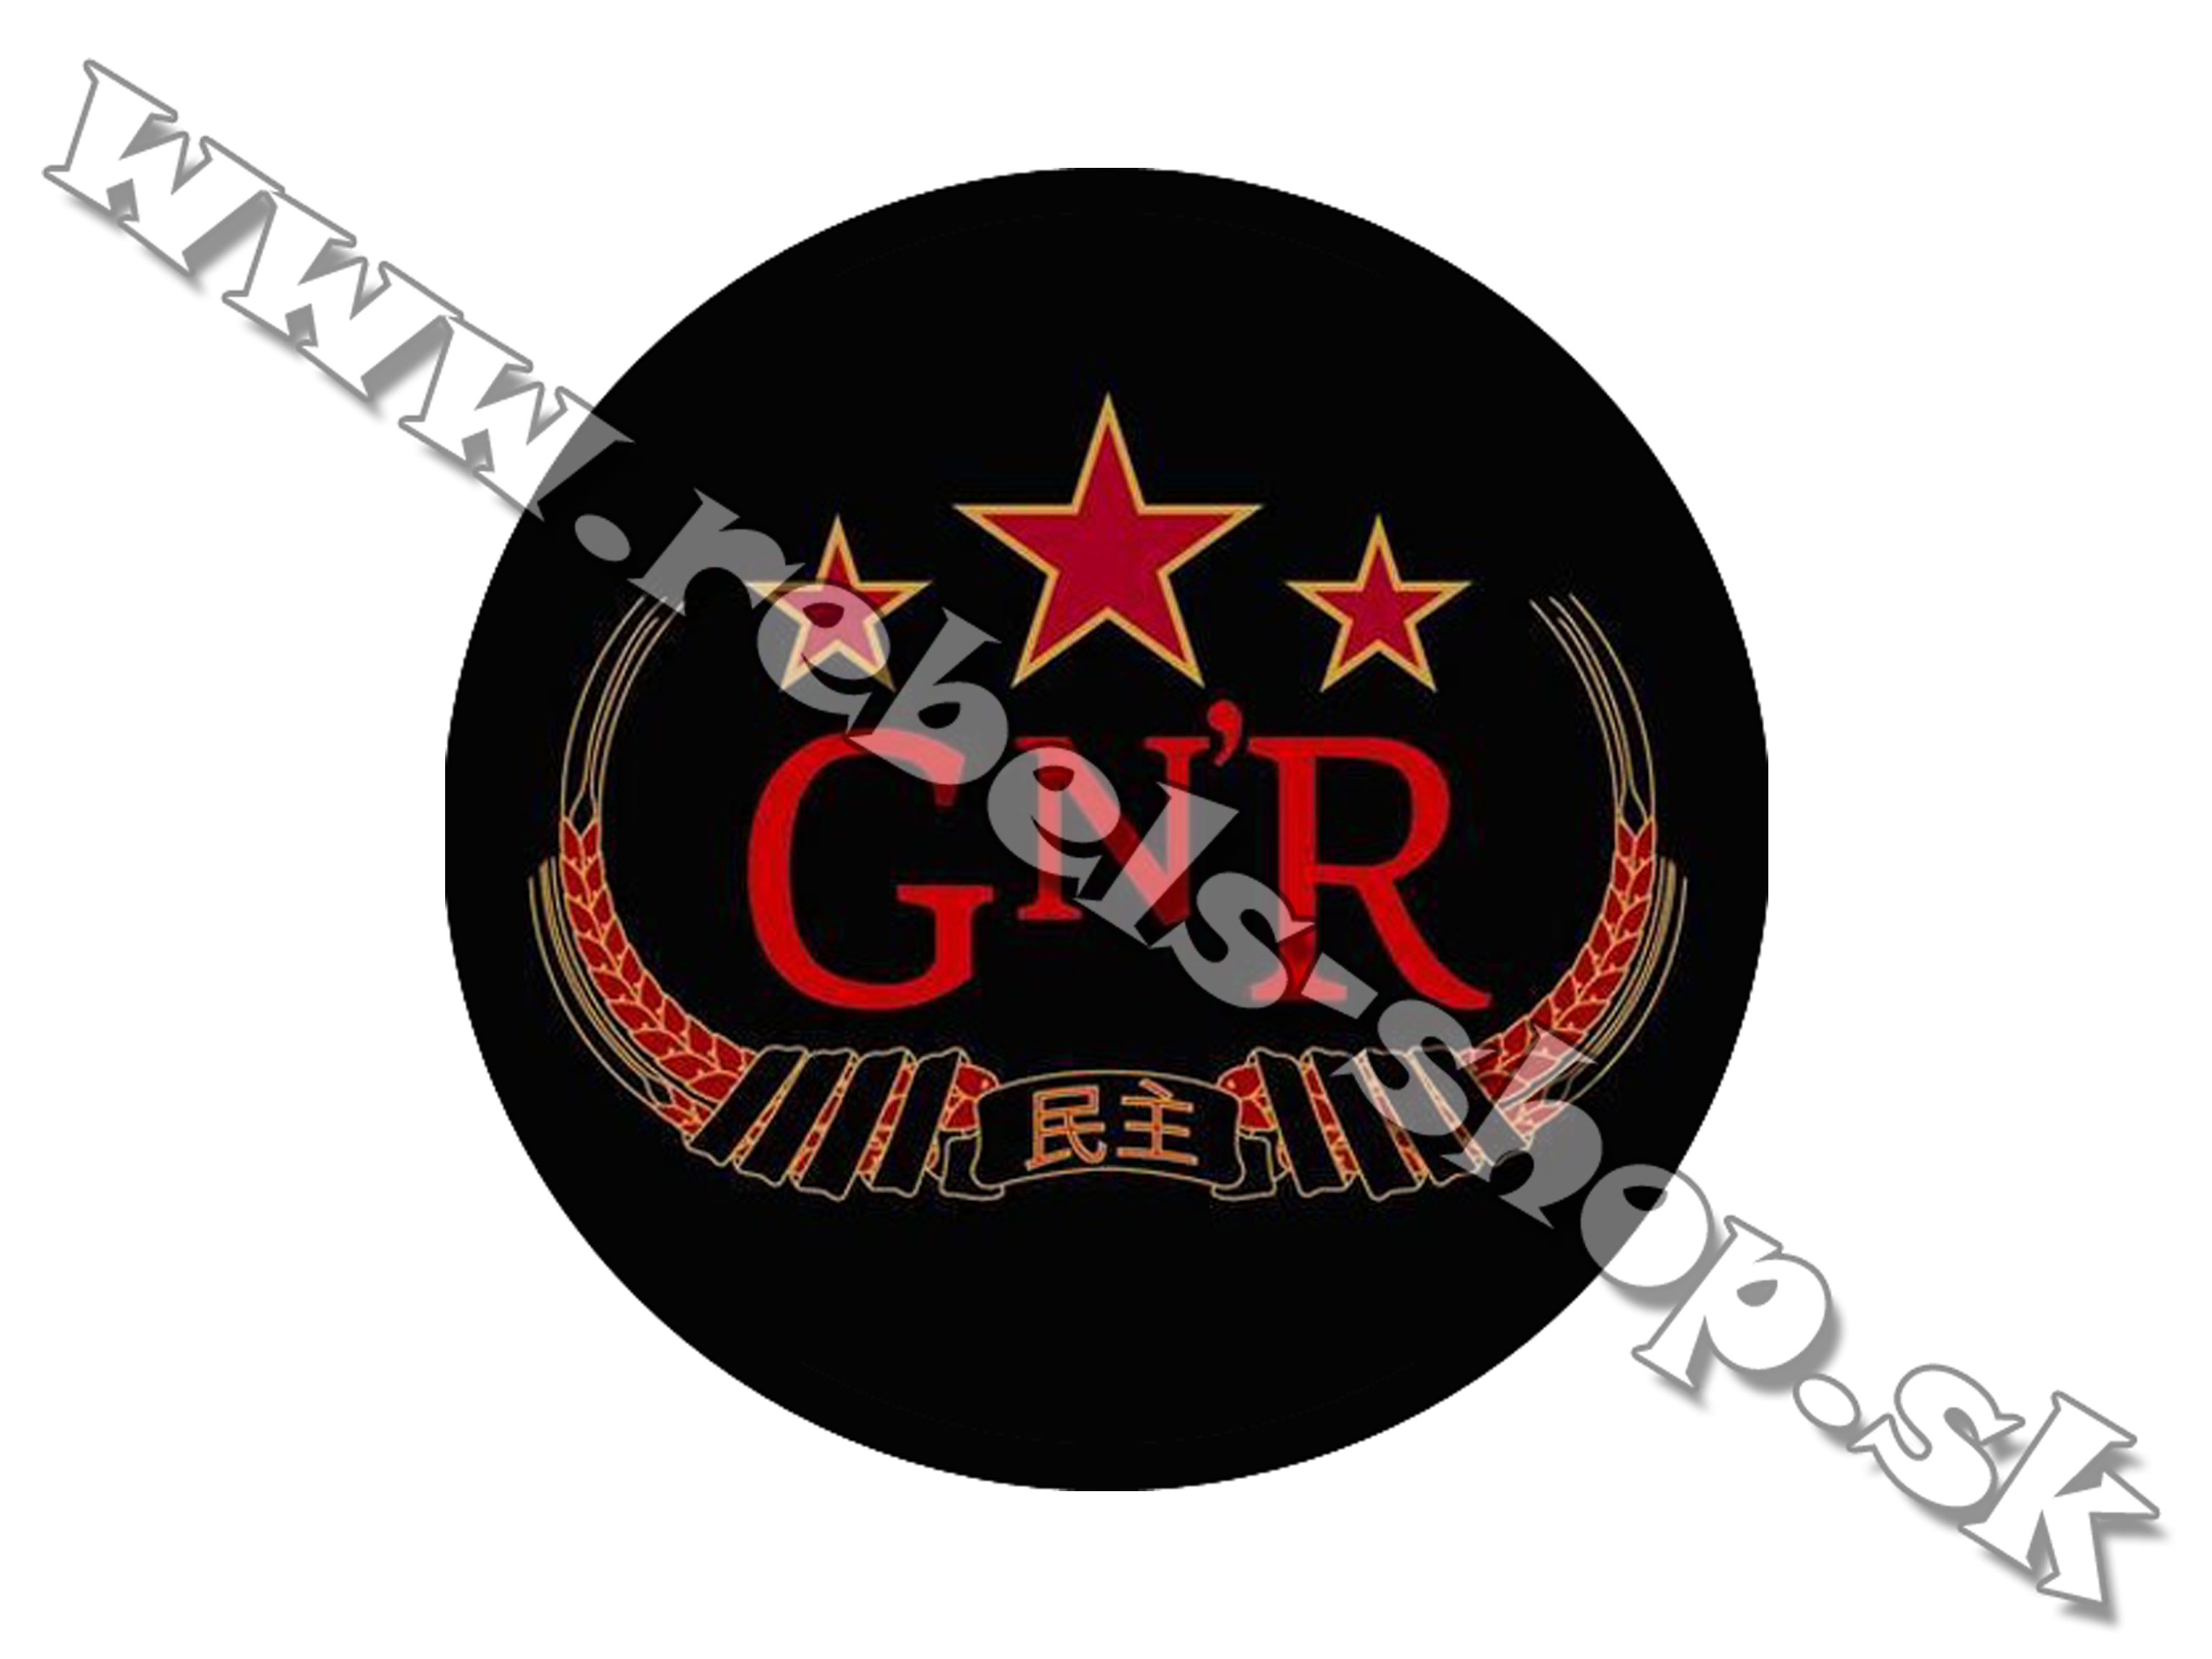 Odznak "Guns N´ Roses"